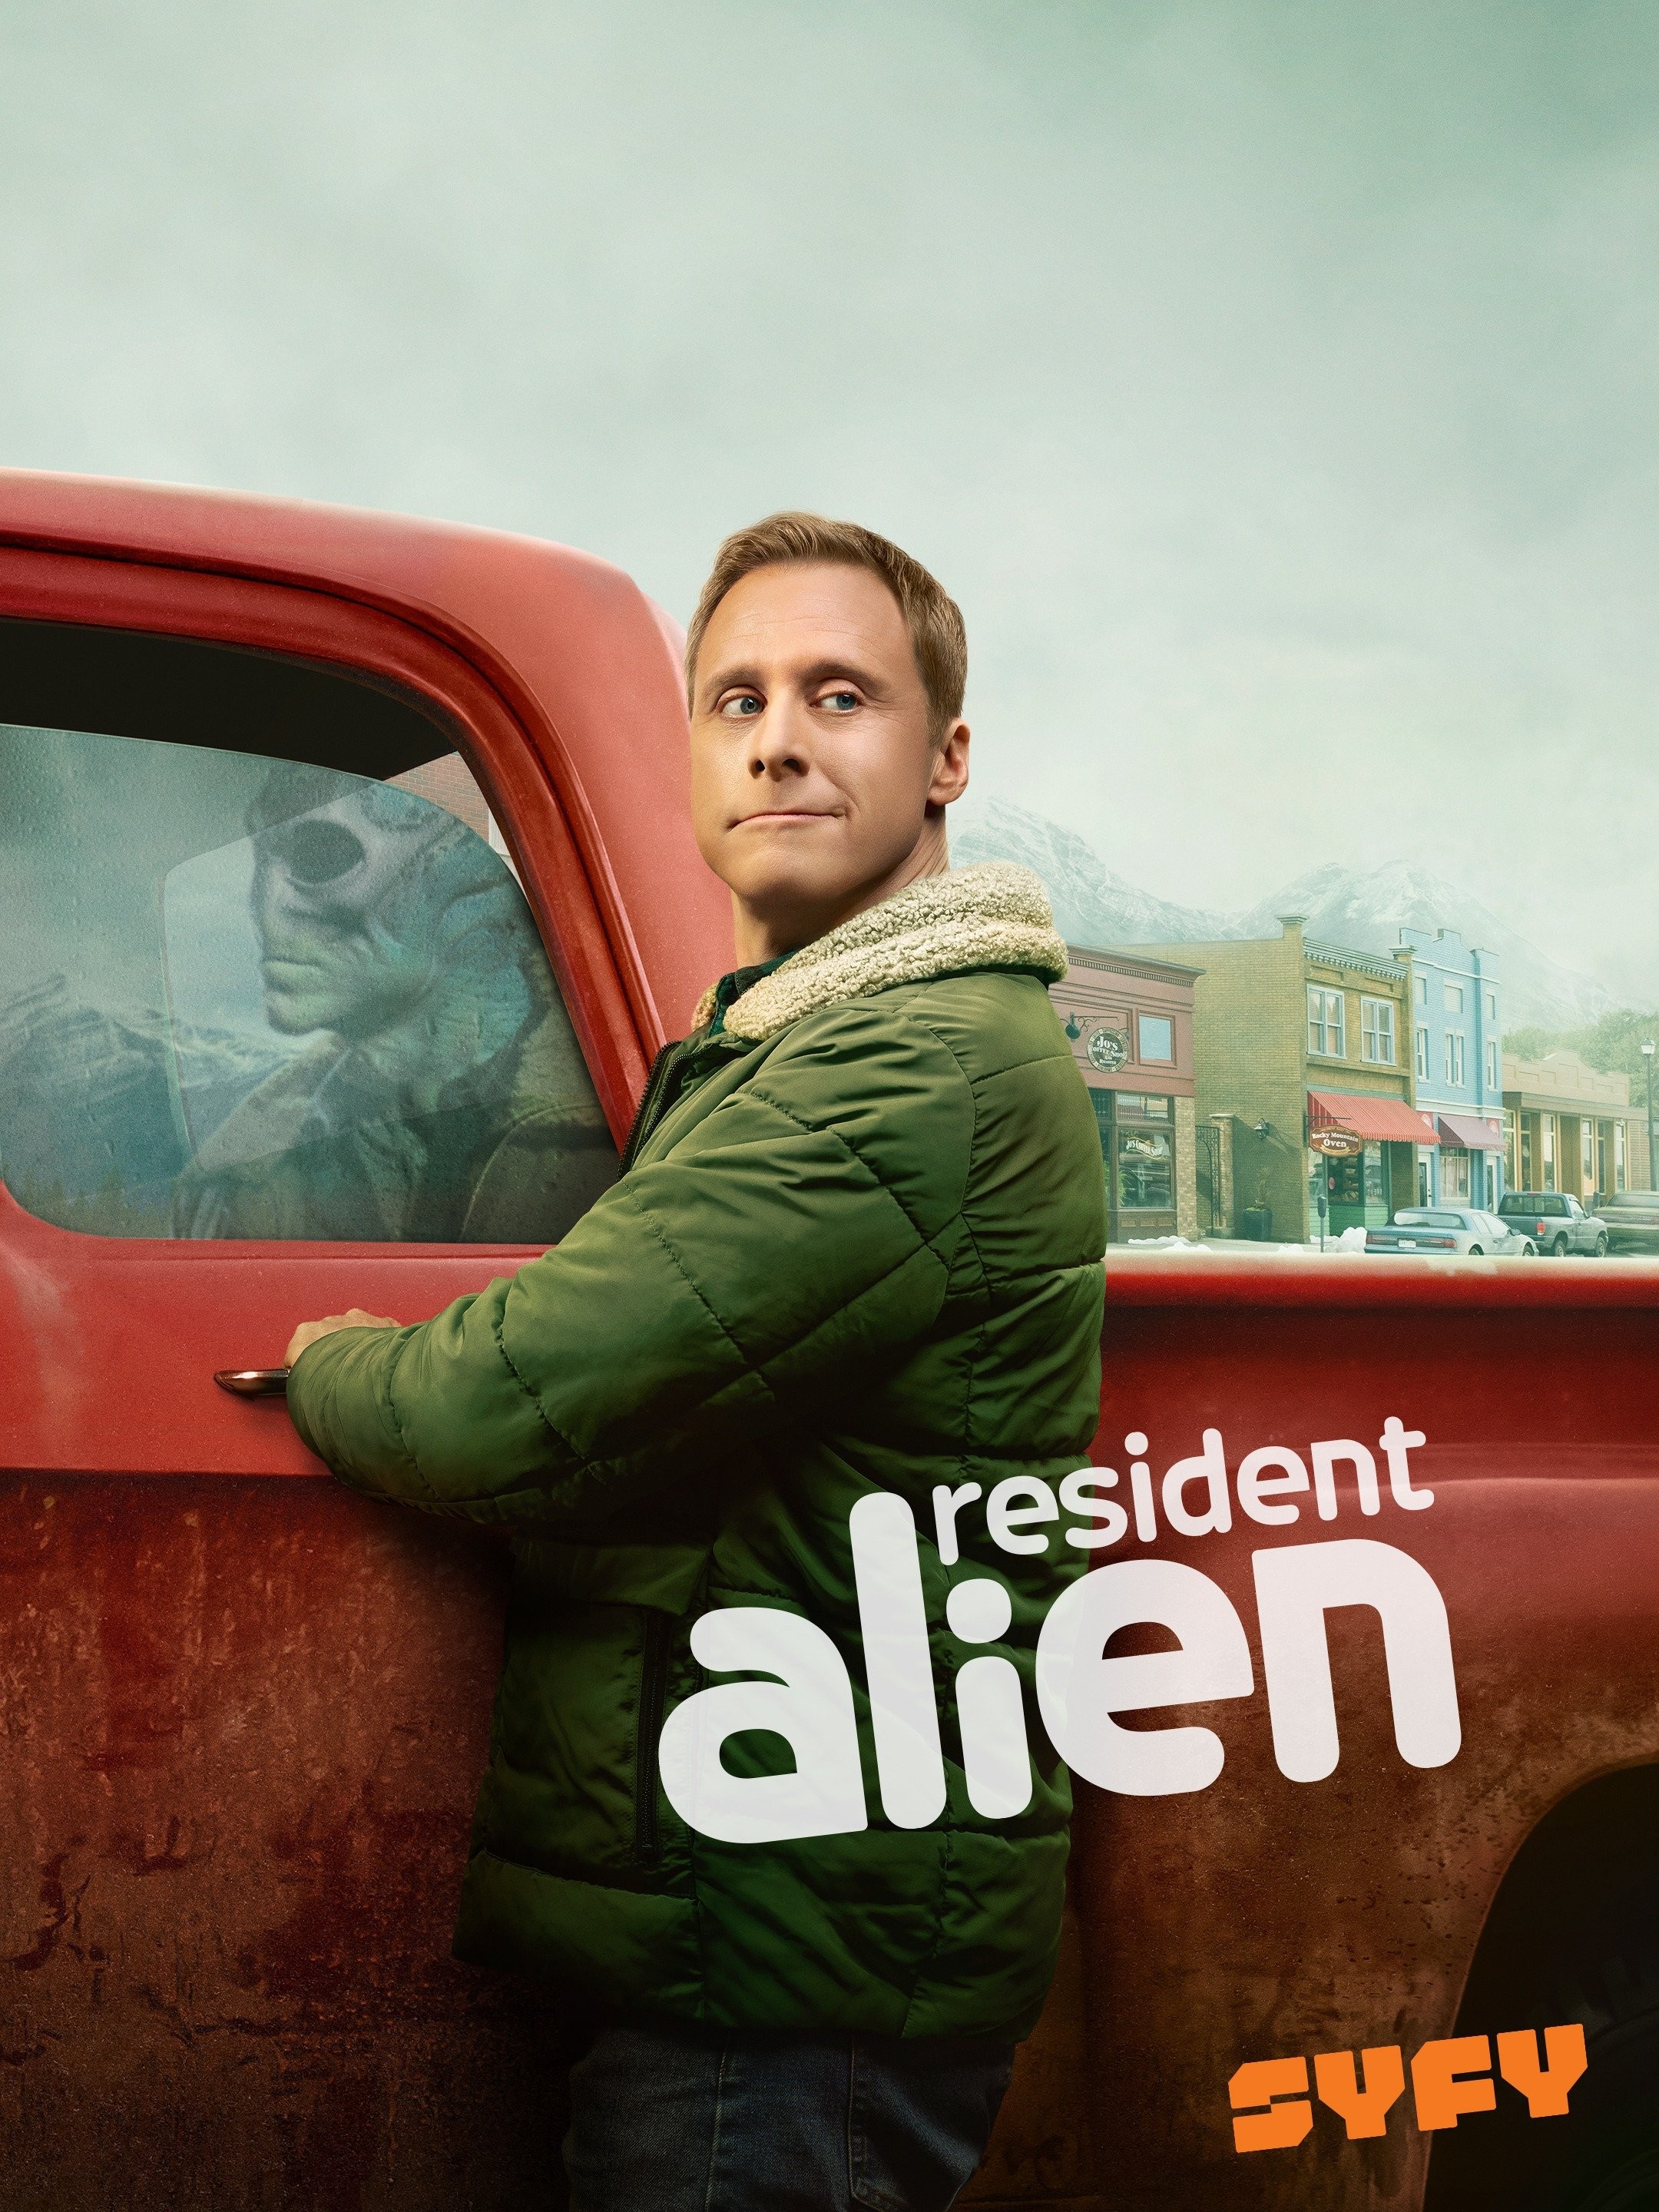 Watch Alien TV season 1 episode 9 streaming online